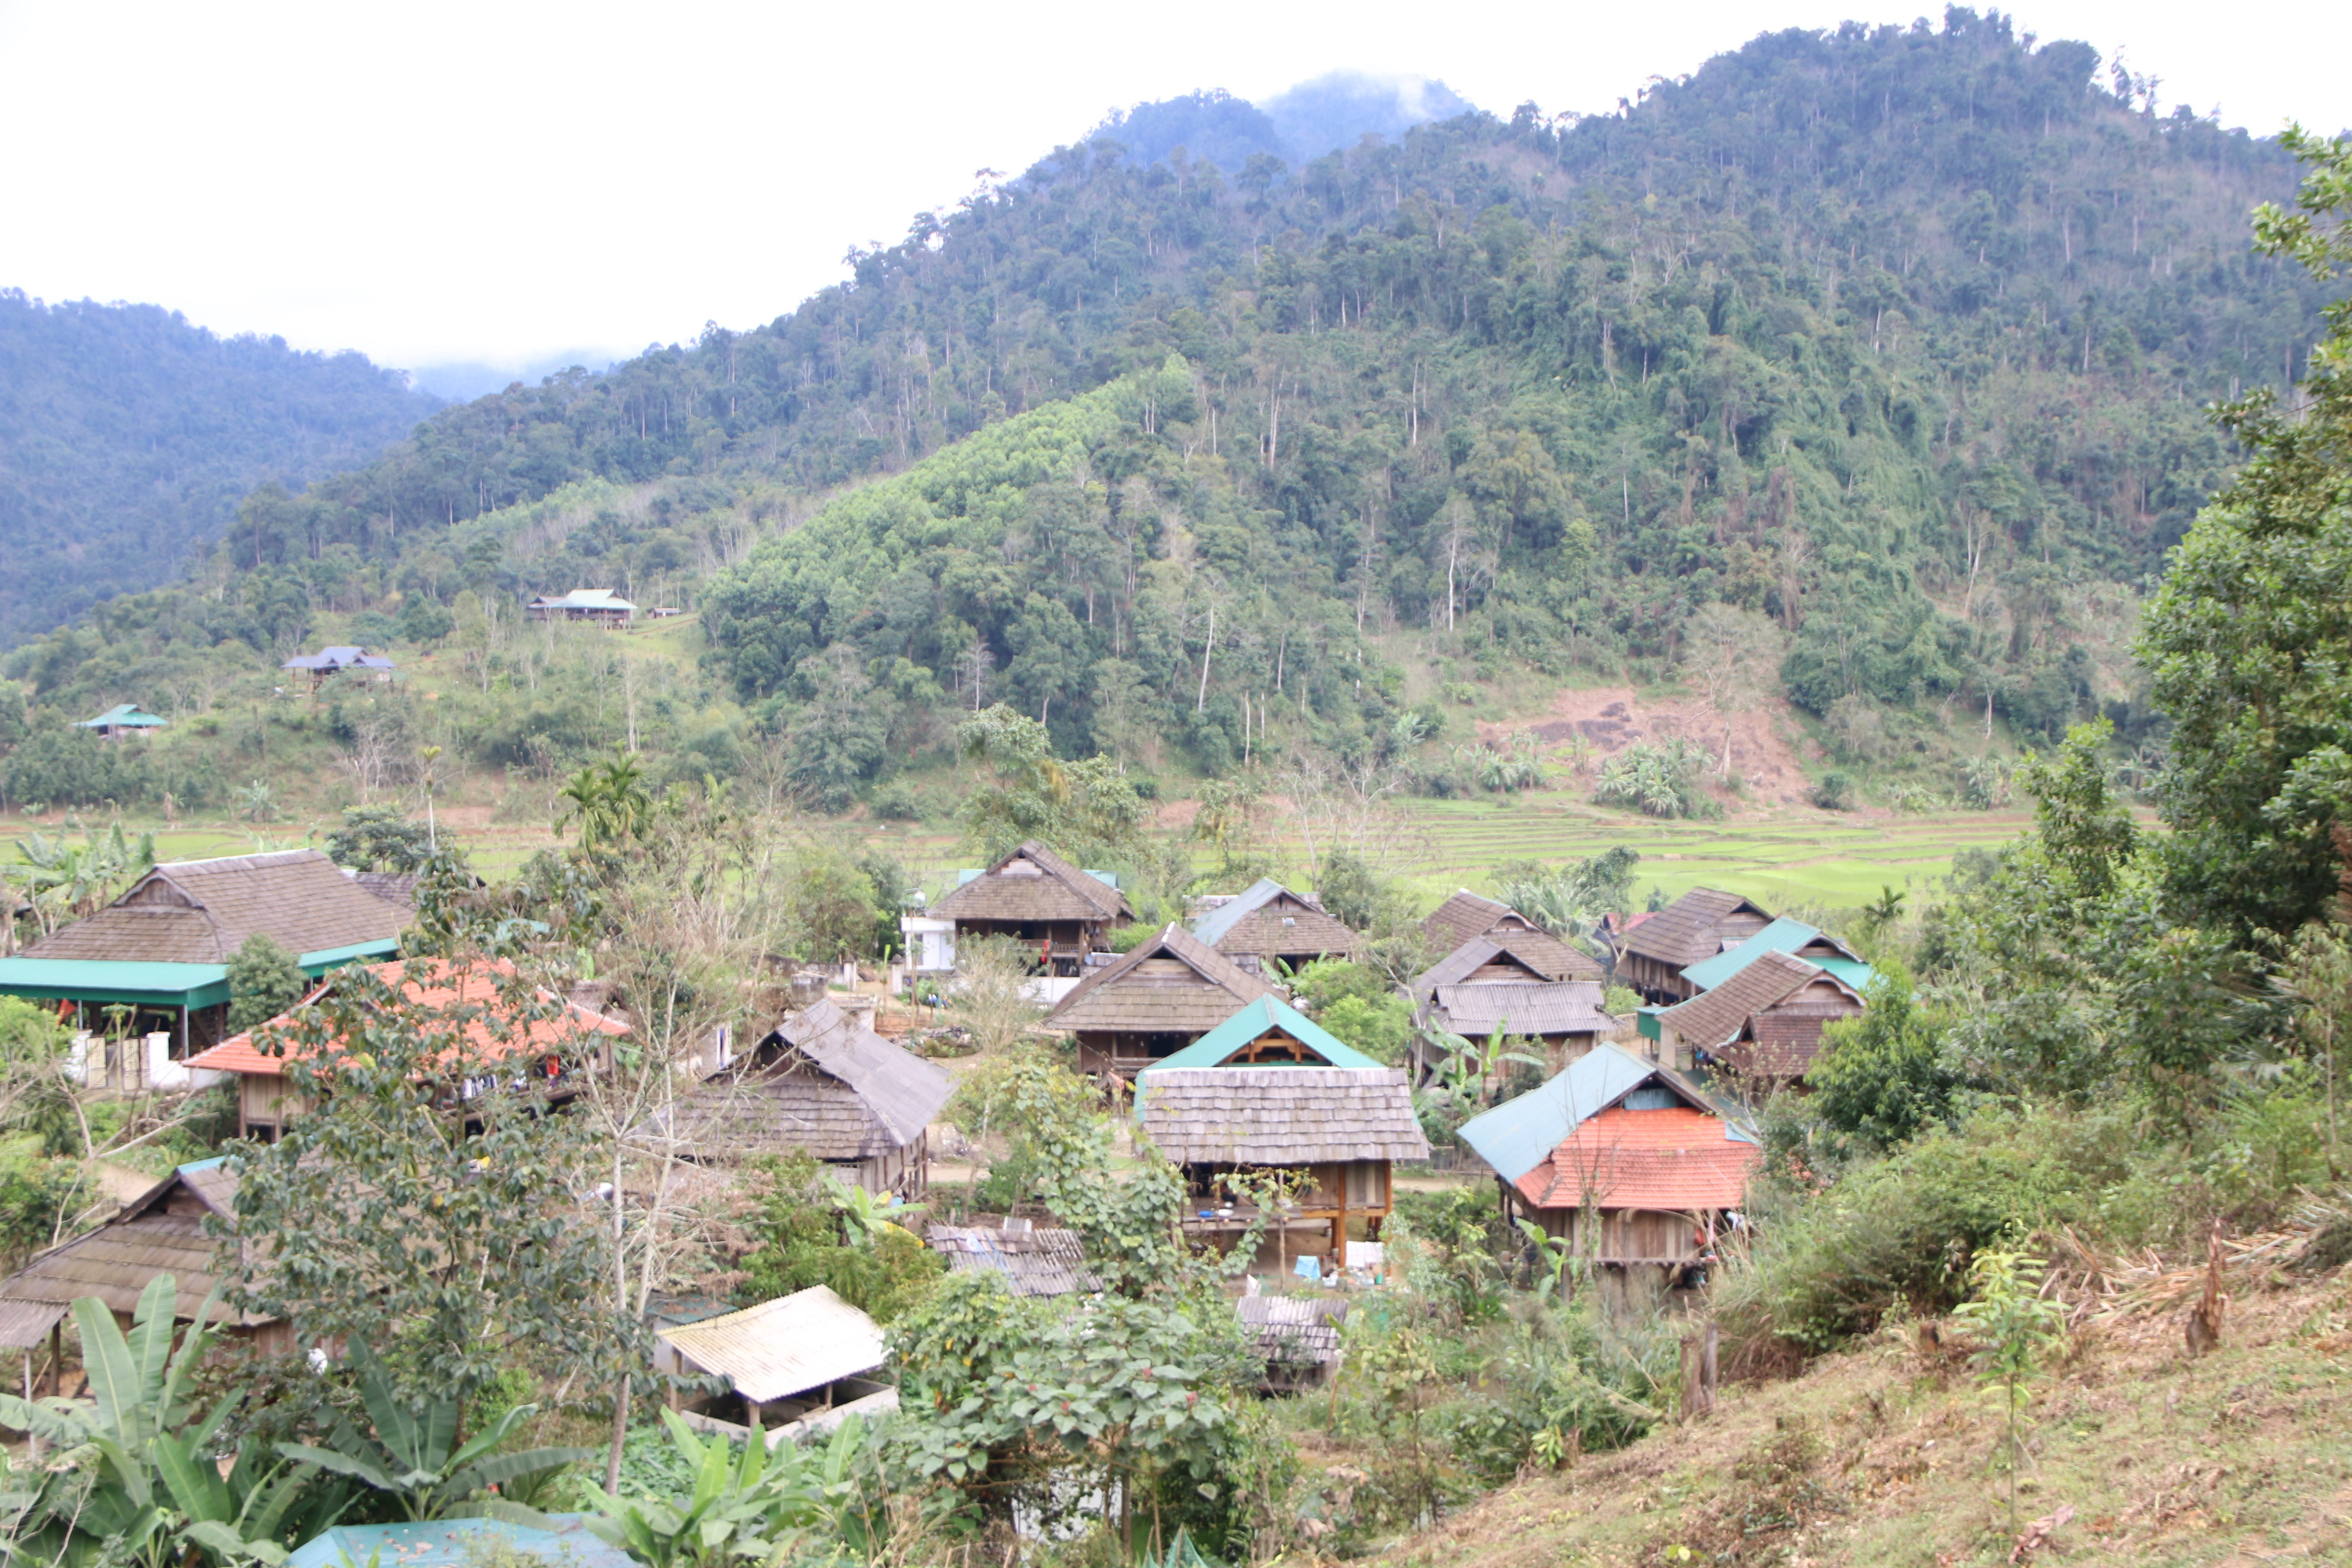 Các bản làng người Thái ở huyện miền núi Quế Phong đã sẵn sàng trở thành điểm đến phục vụ du khách tham quan. Ảnh: Tiến Đông